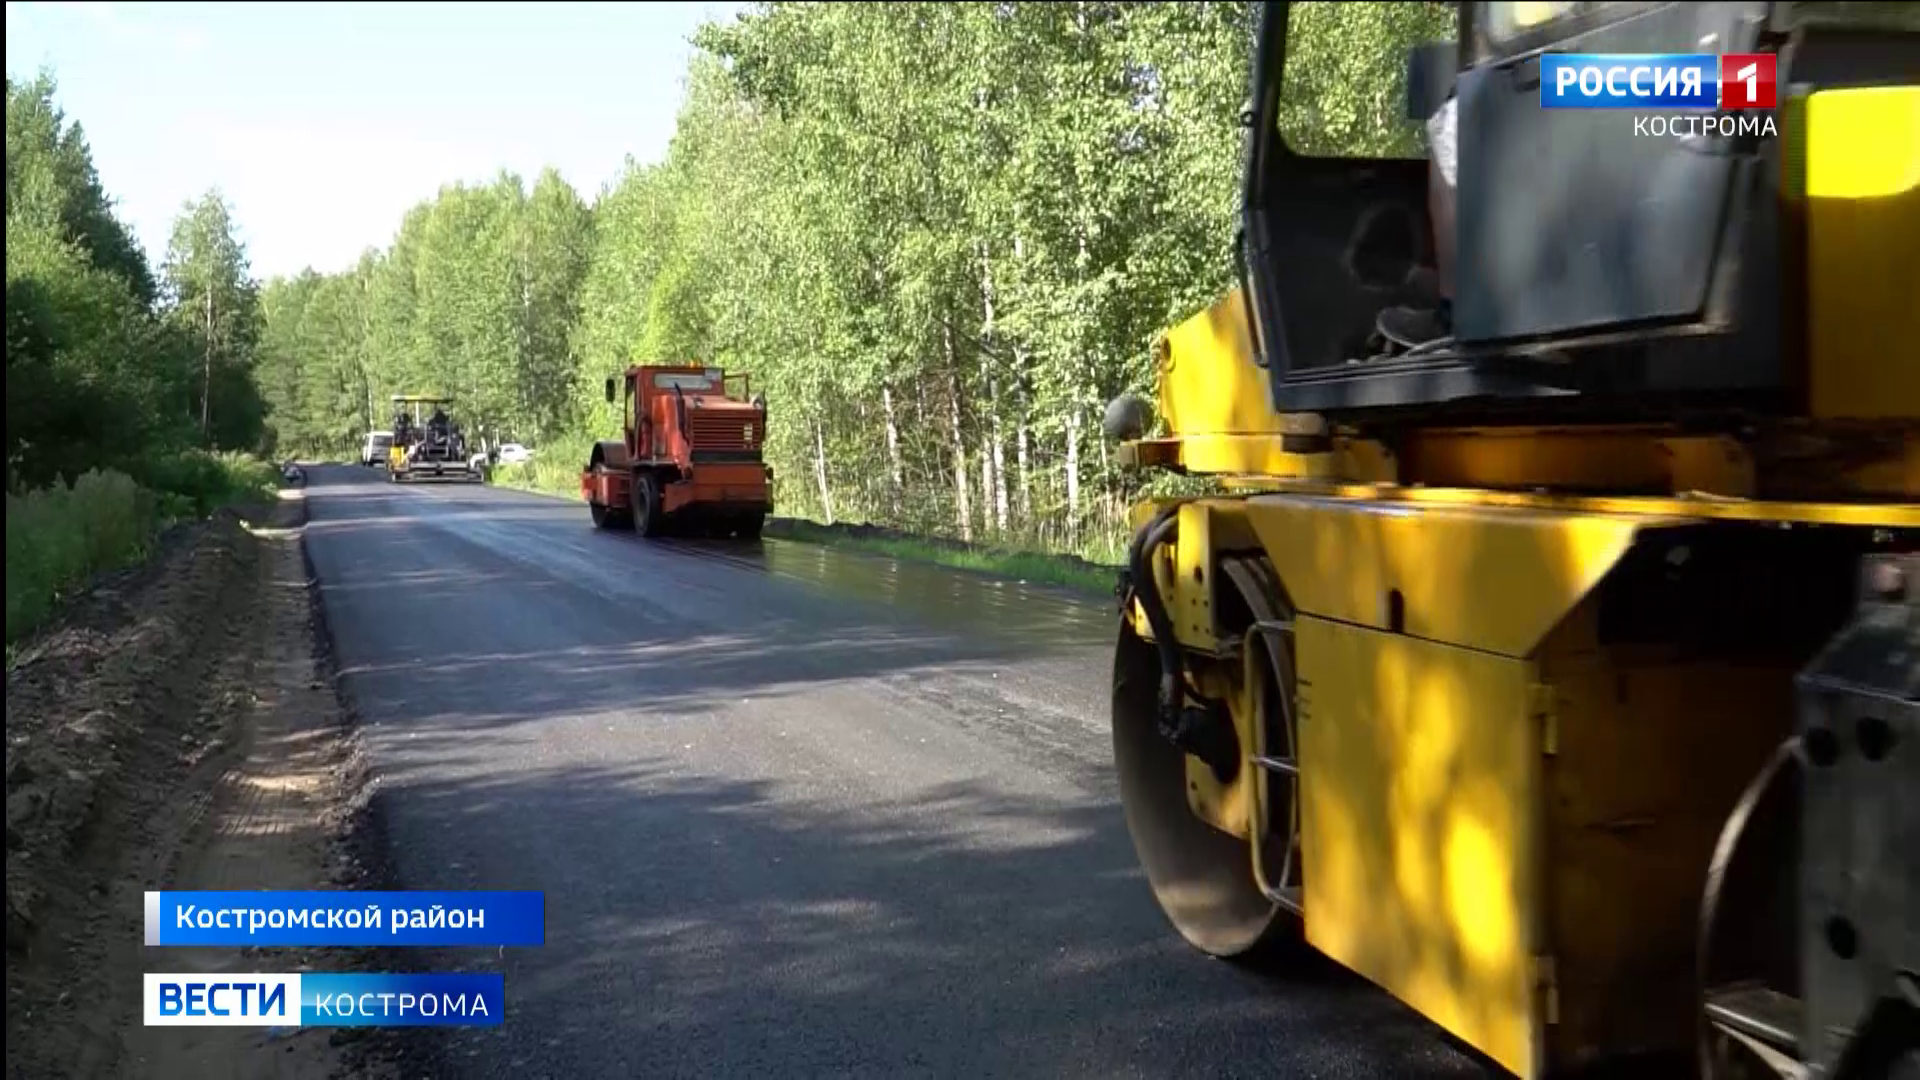 Два крупных посёлка под Костромой соединит обновлённая дорога